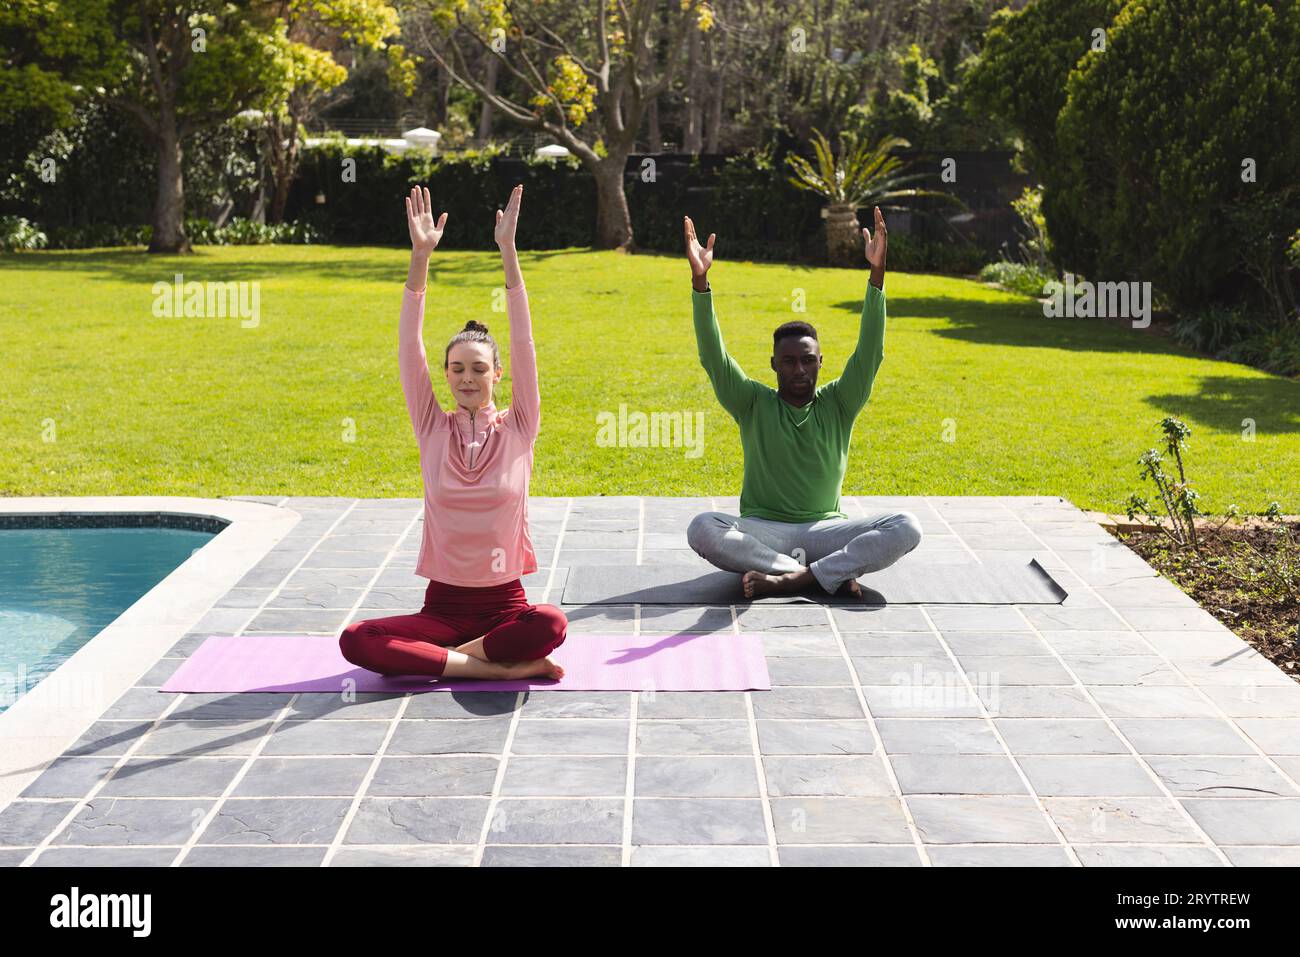 Coppie diverse che praticano yoga e meditano vicino alla piscina in giardino Foto Stock